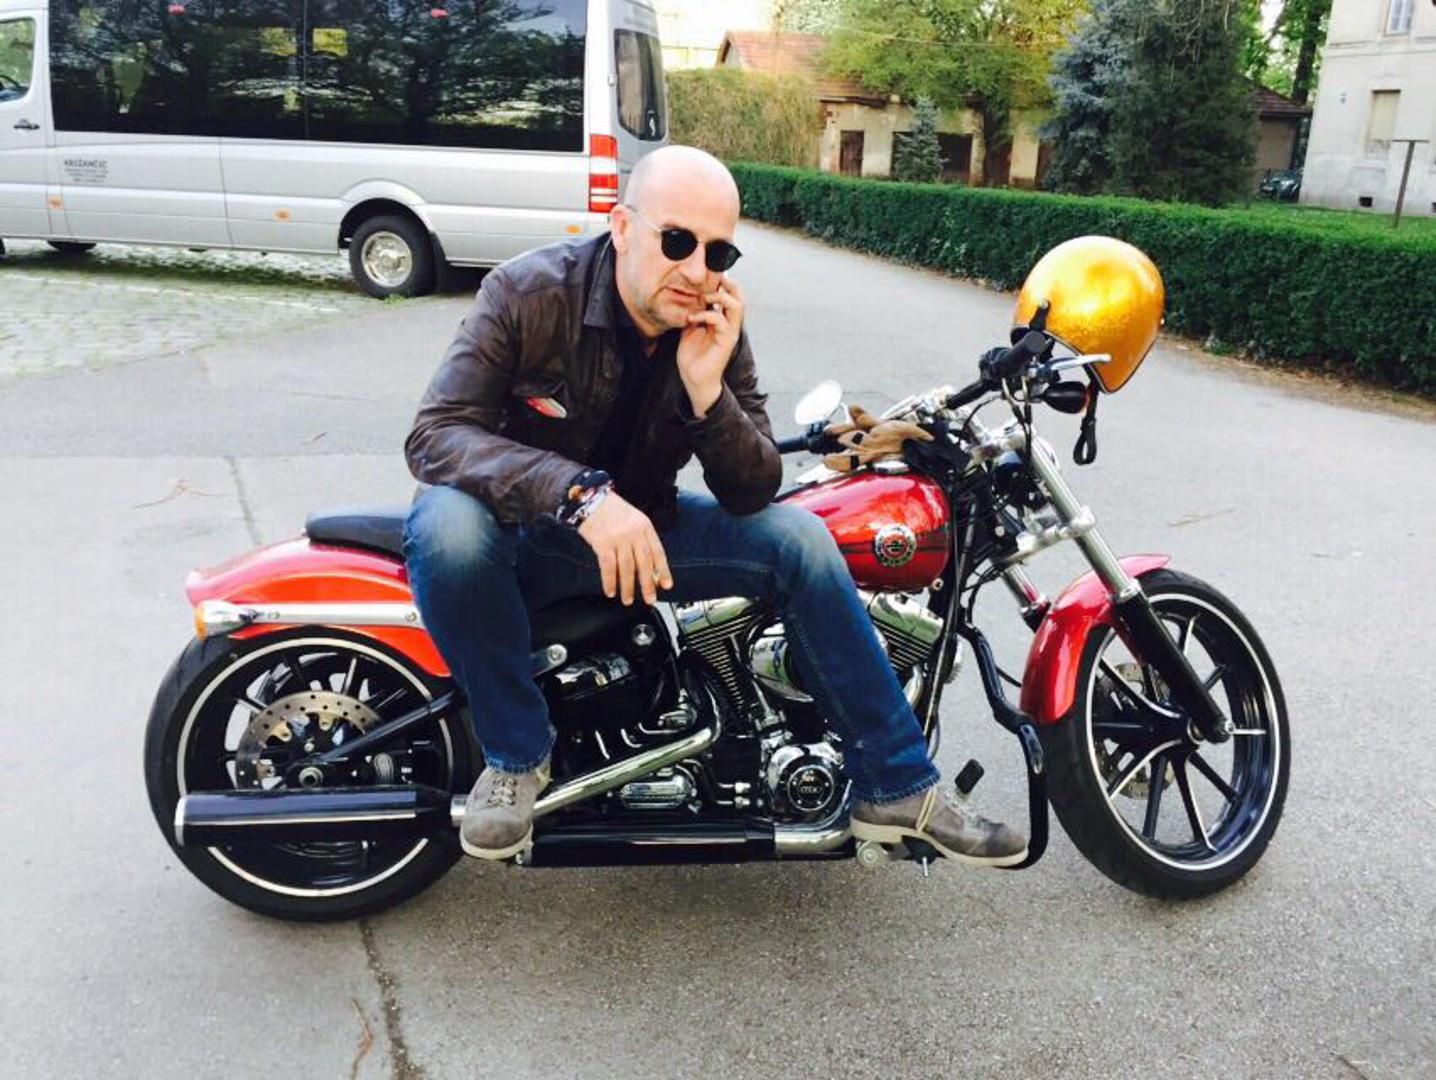 Dr. Danko Vrdoljak - boks, jedrenje -
Iako su mu motocikli strast, svoj je nedavno prodao zbog sinova